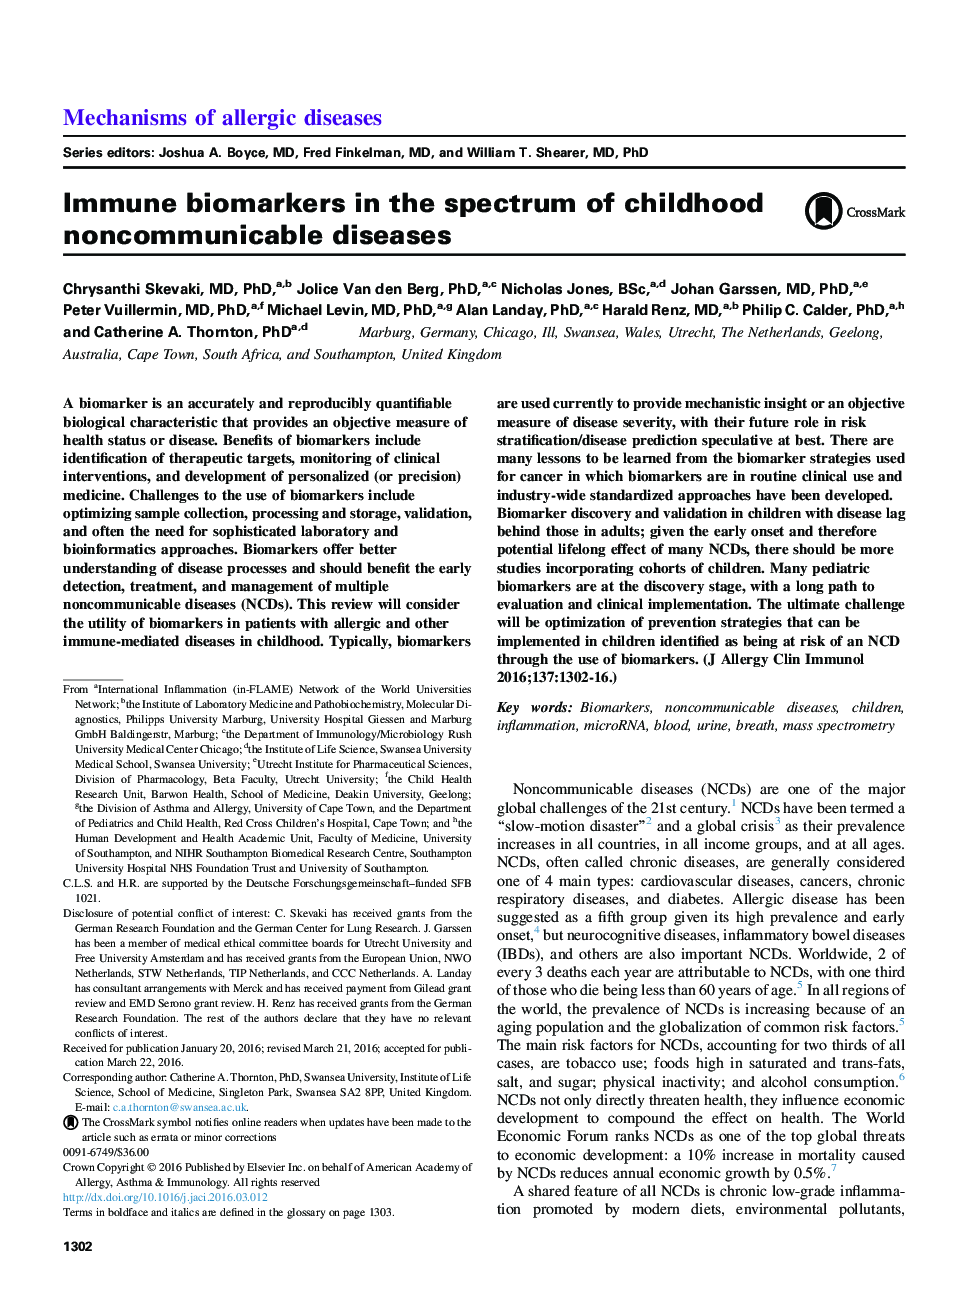 بیومارکرهای ایمنی در طیف بیماری های غیرواقعی دوران کودکی و ویژگی های آن 